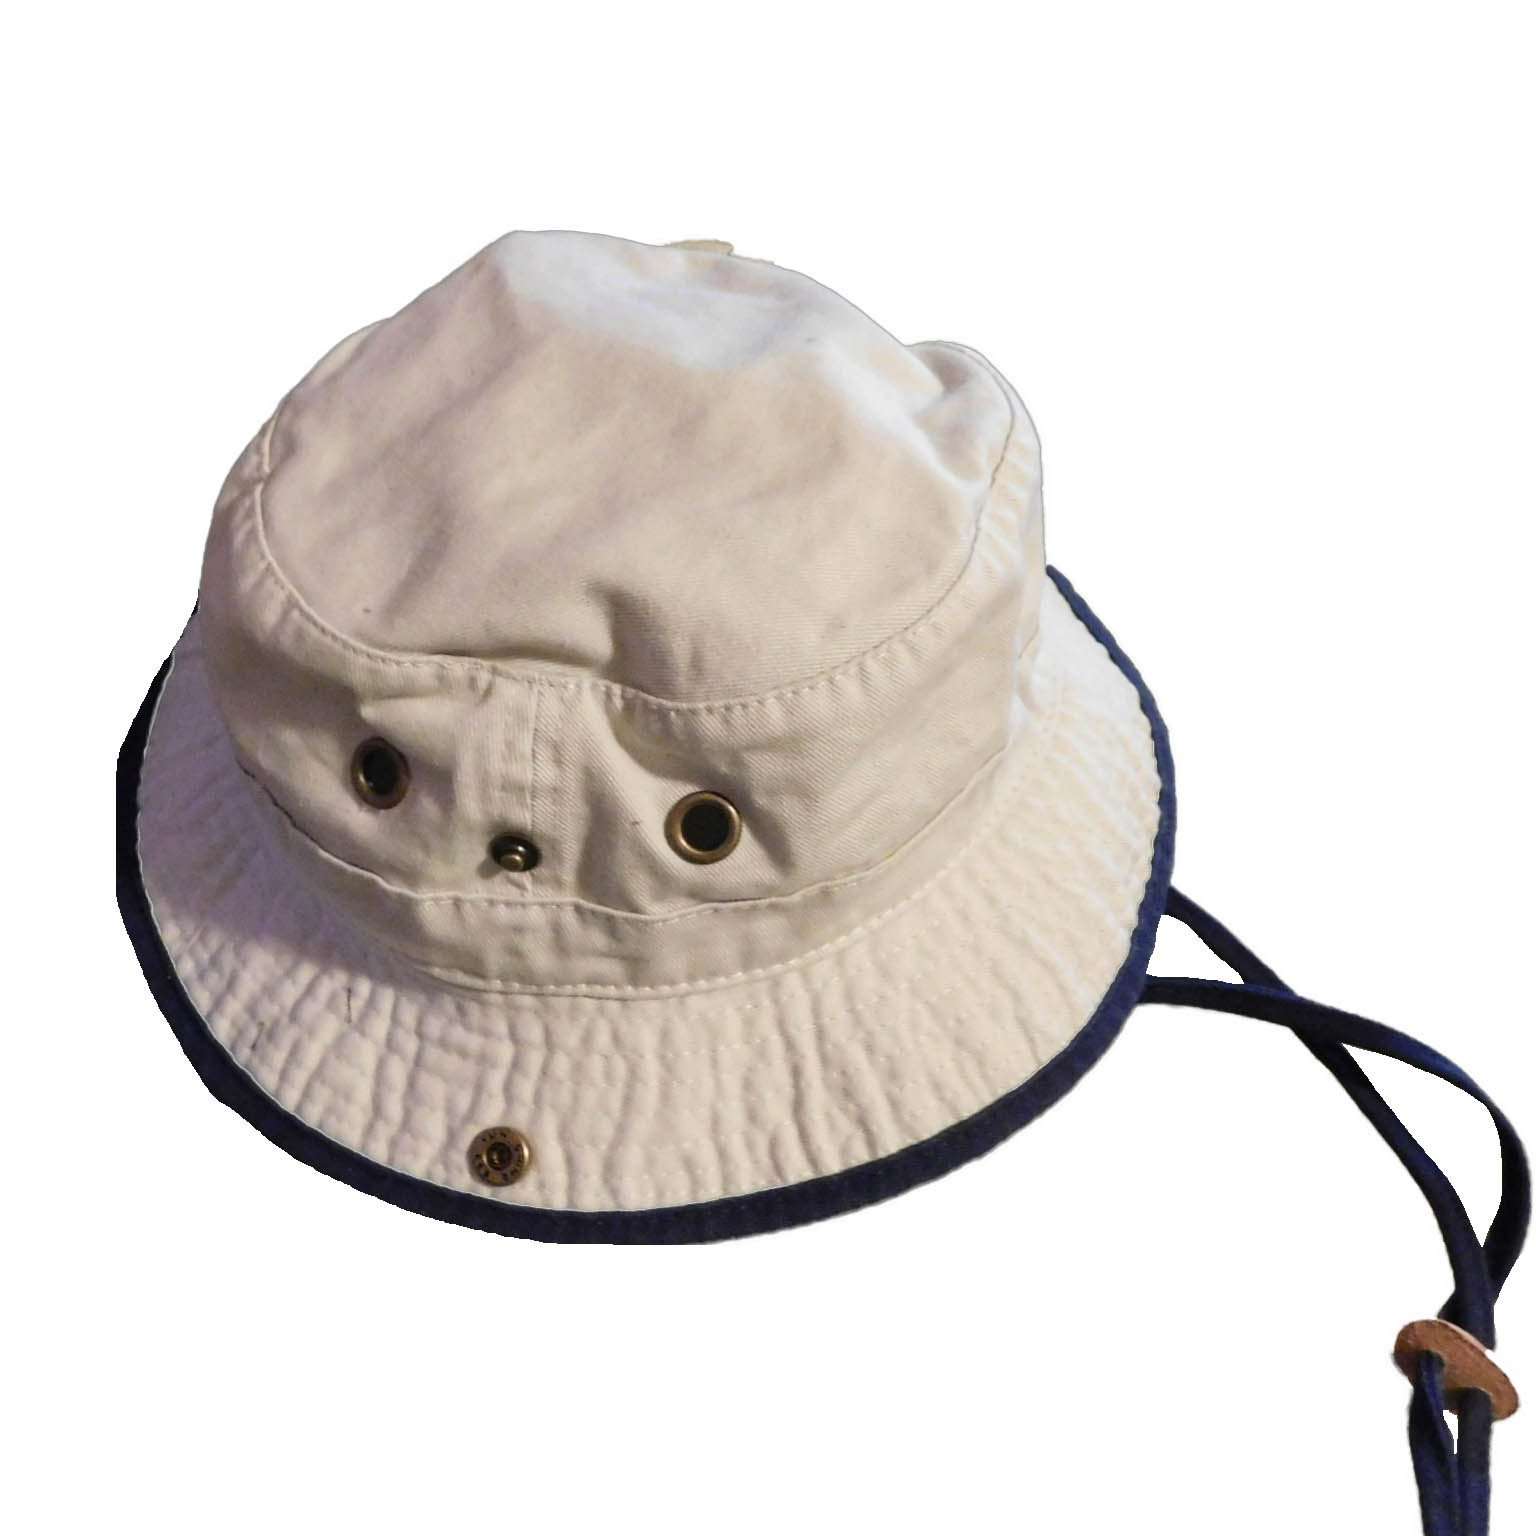 Kid's Cotton Boonie Hat - DPC Kinder Caps, Bucket Hat - SetarTrading Hats 